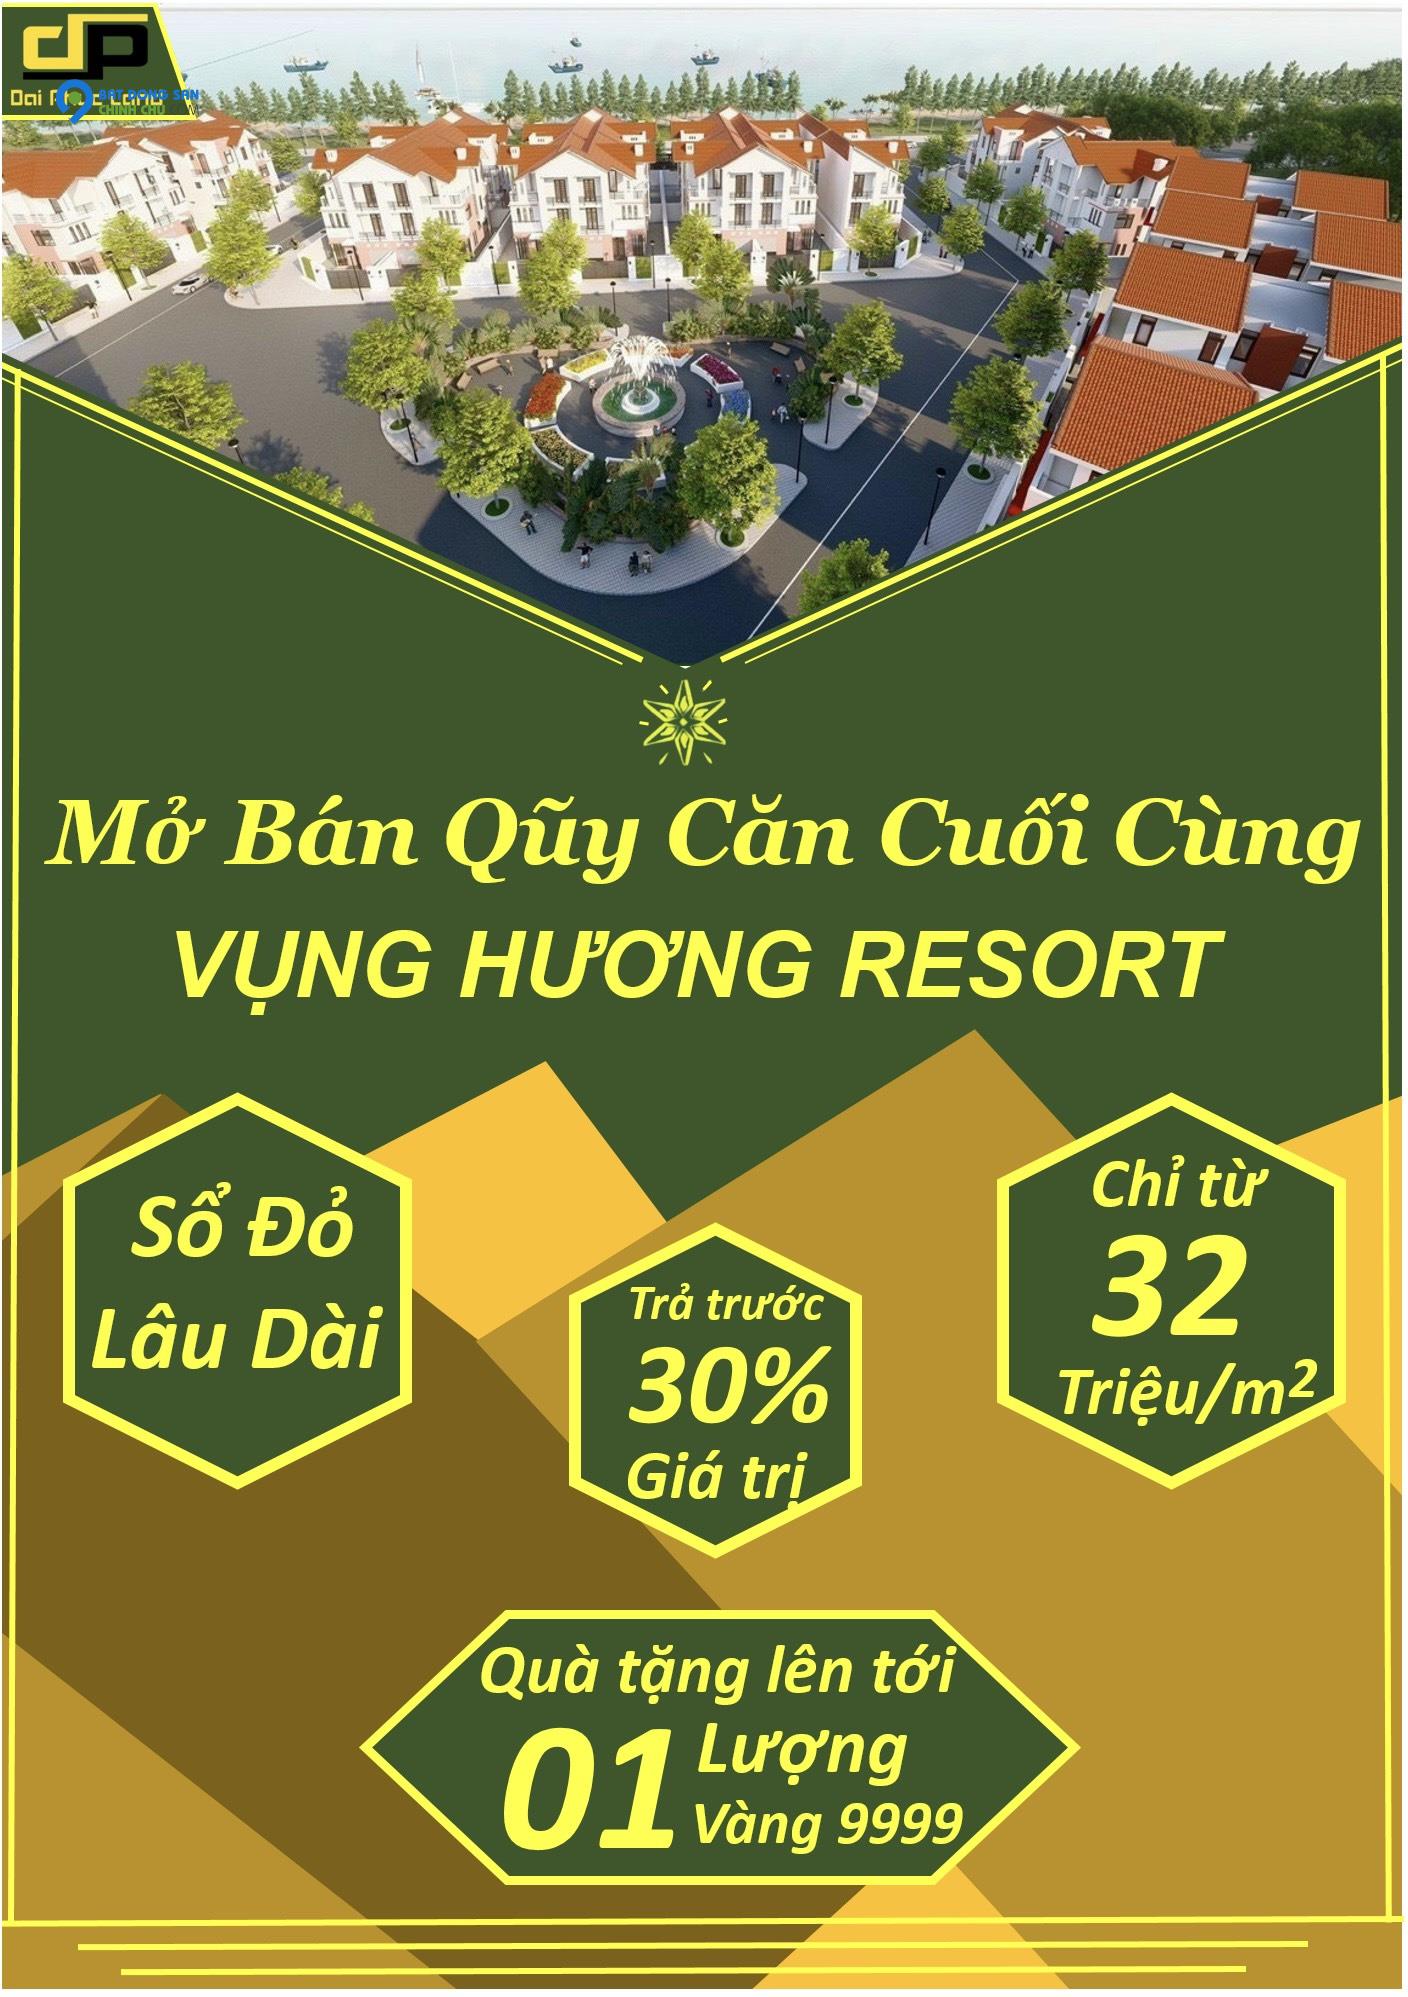 Đất nền dự án Vụng Hương Resort - Sở hữu lâu dài - View trực diện biển - Giá đẹp so với thị trường